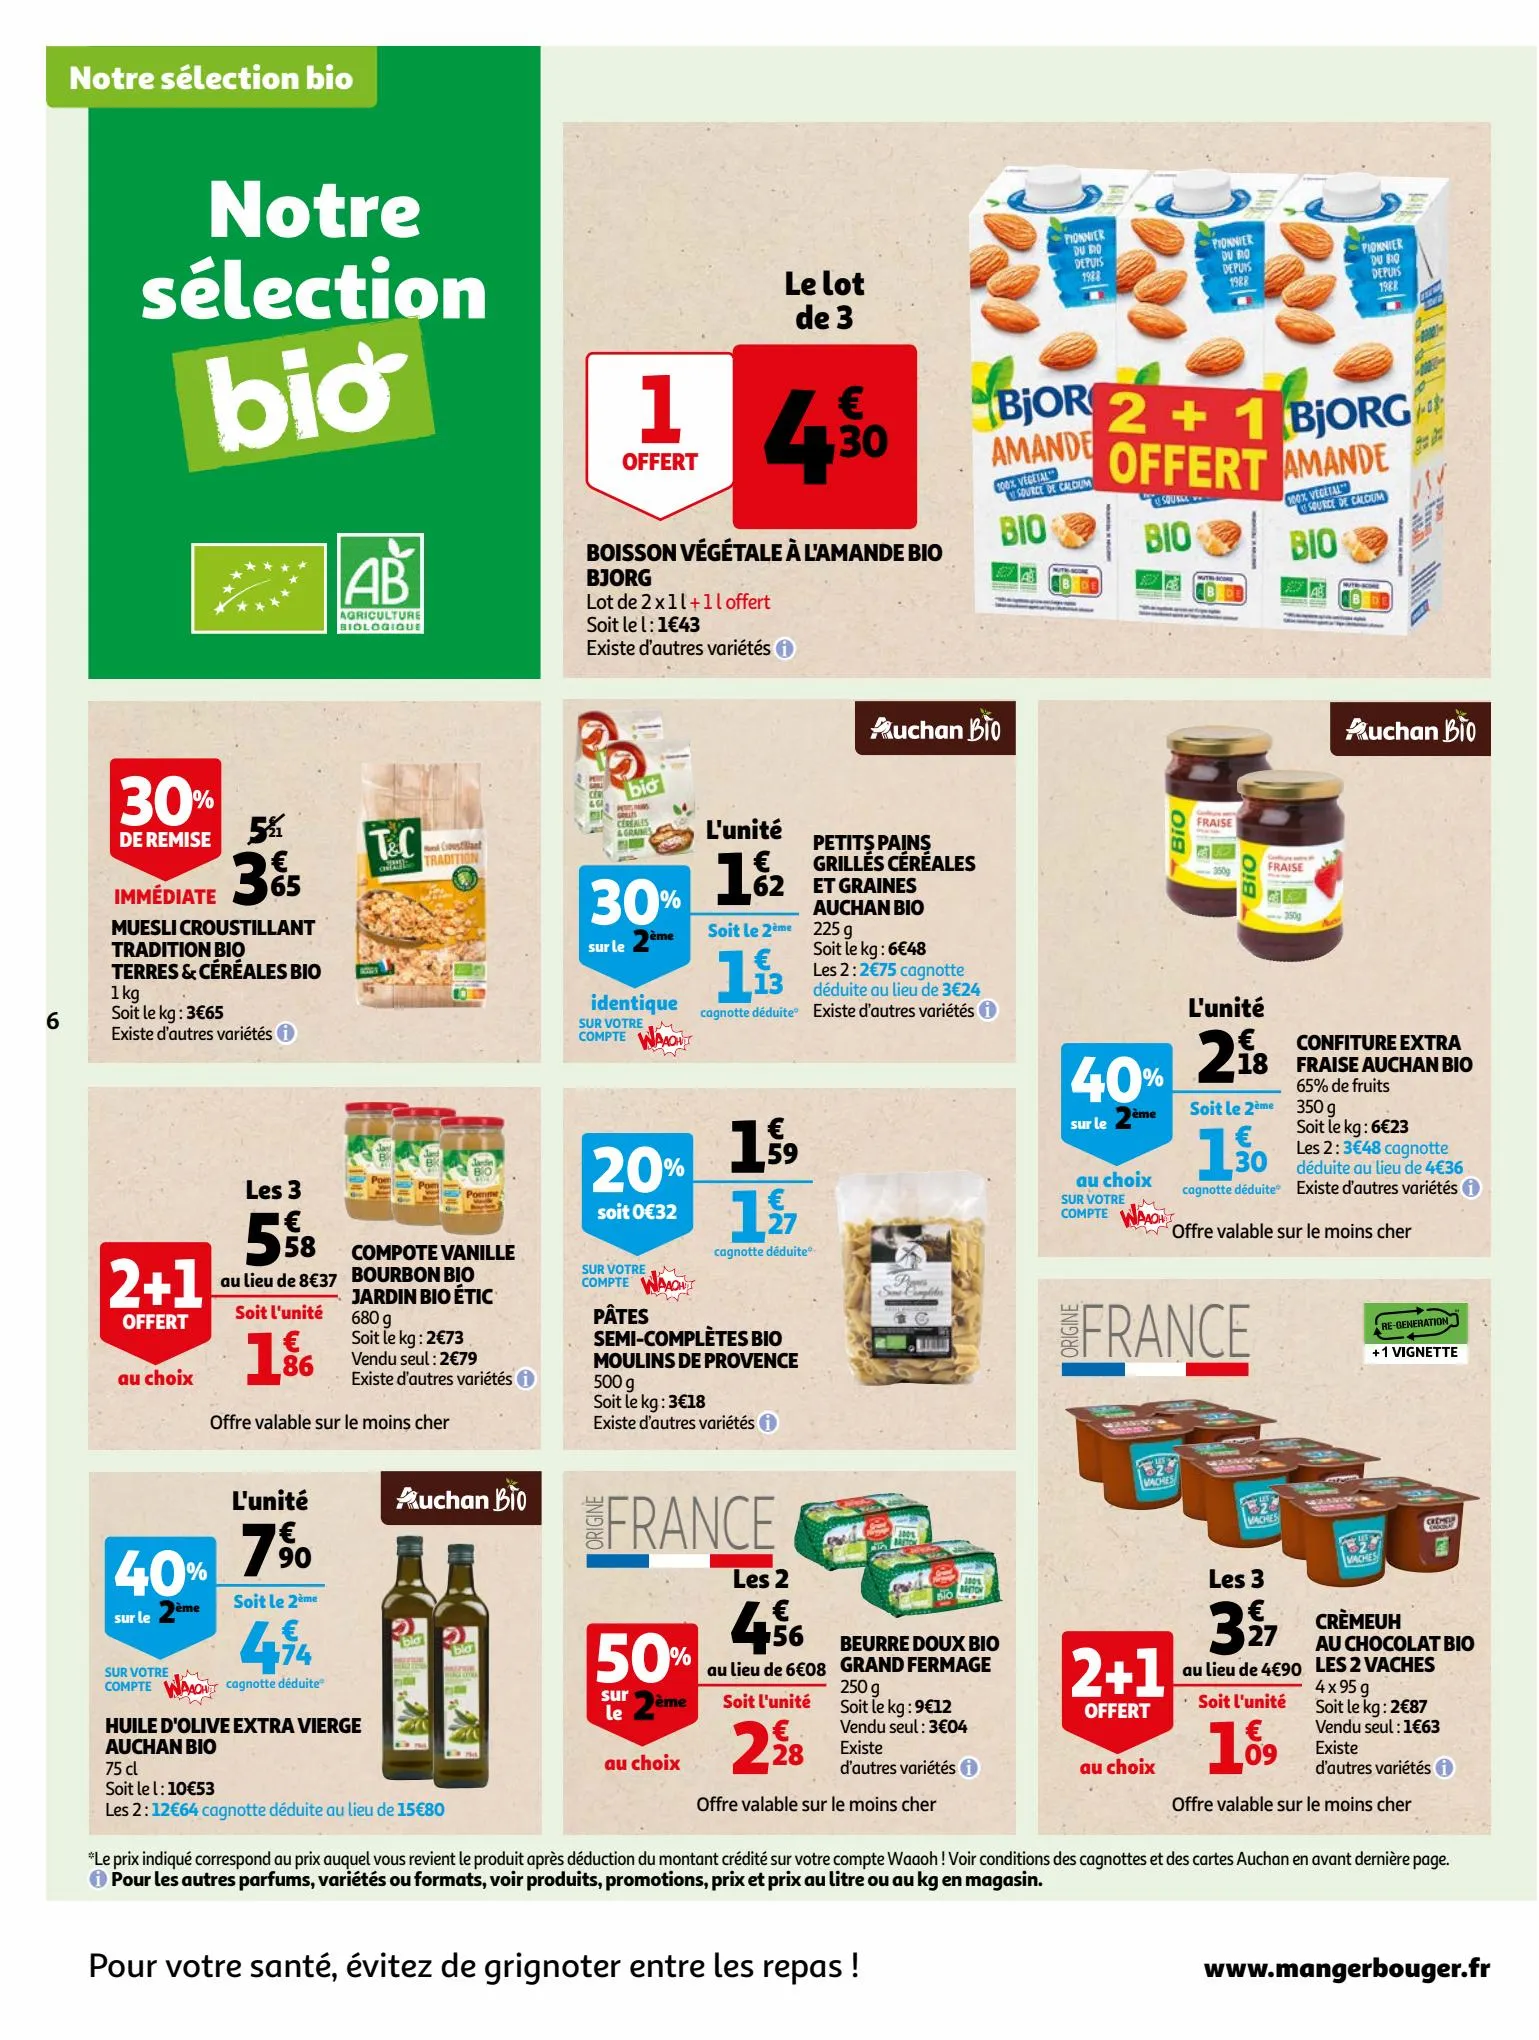 Catalogue Bio ou filière responsable, nos produits ont tout bon dans votre supermarché, page 00006